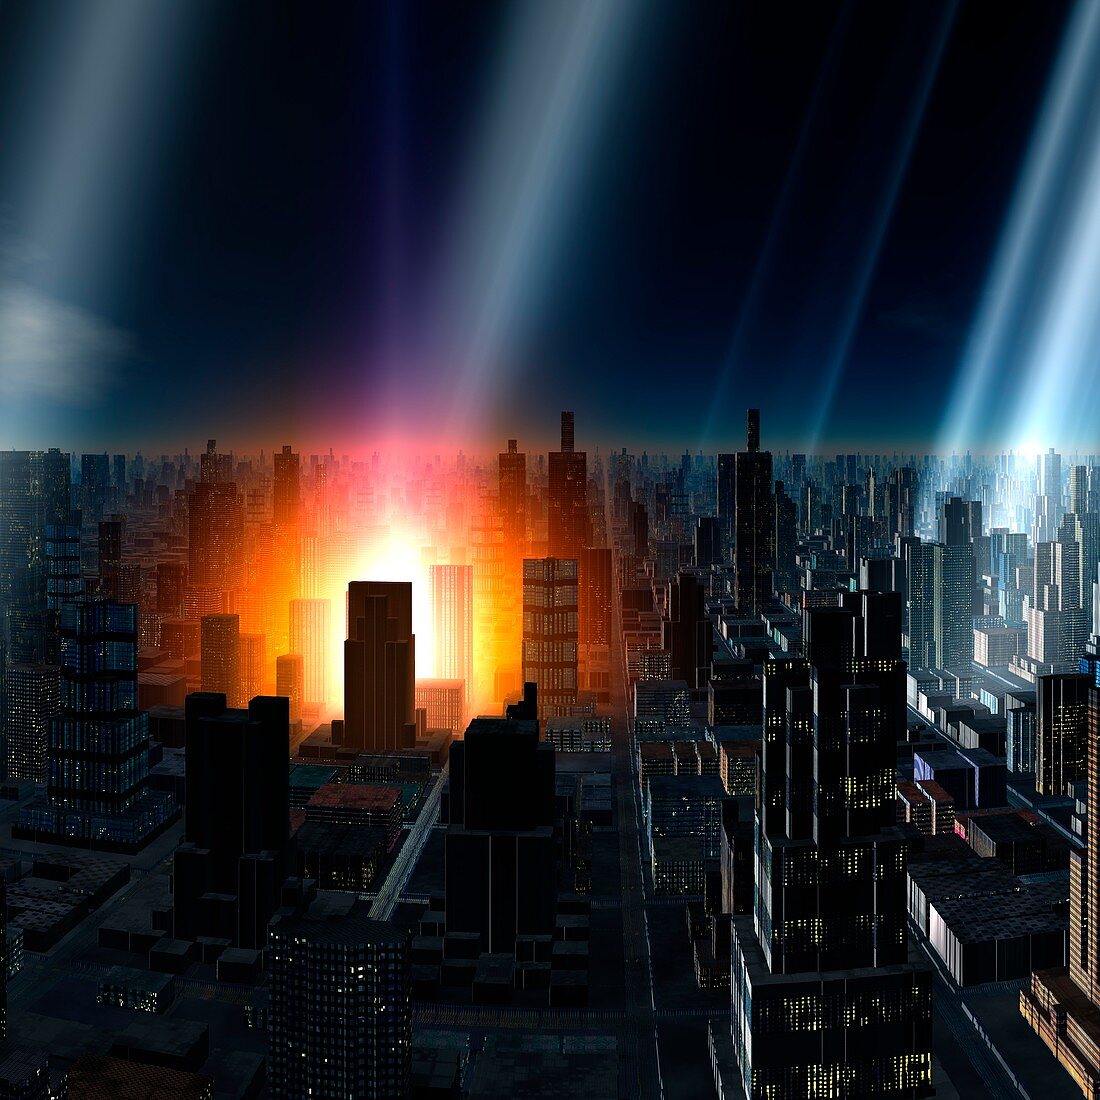 Meteor shower over alien city,artwork